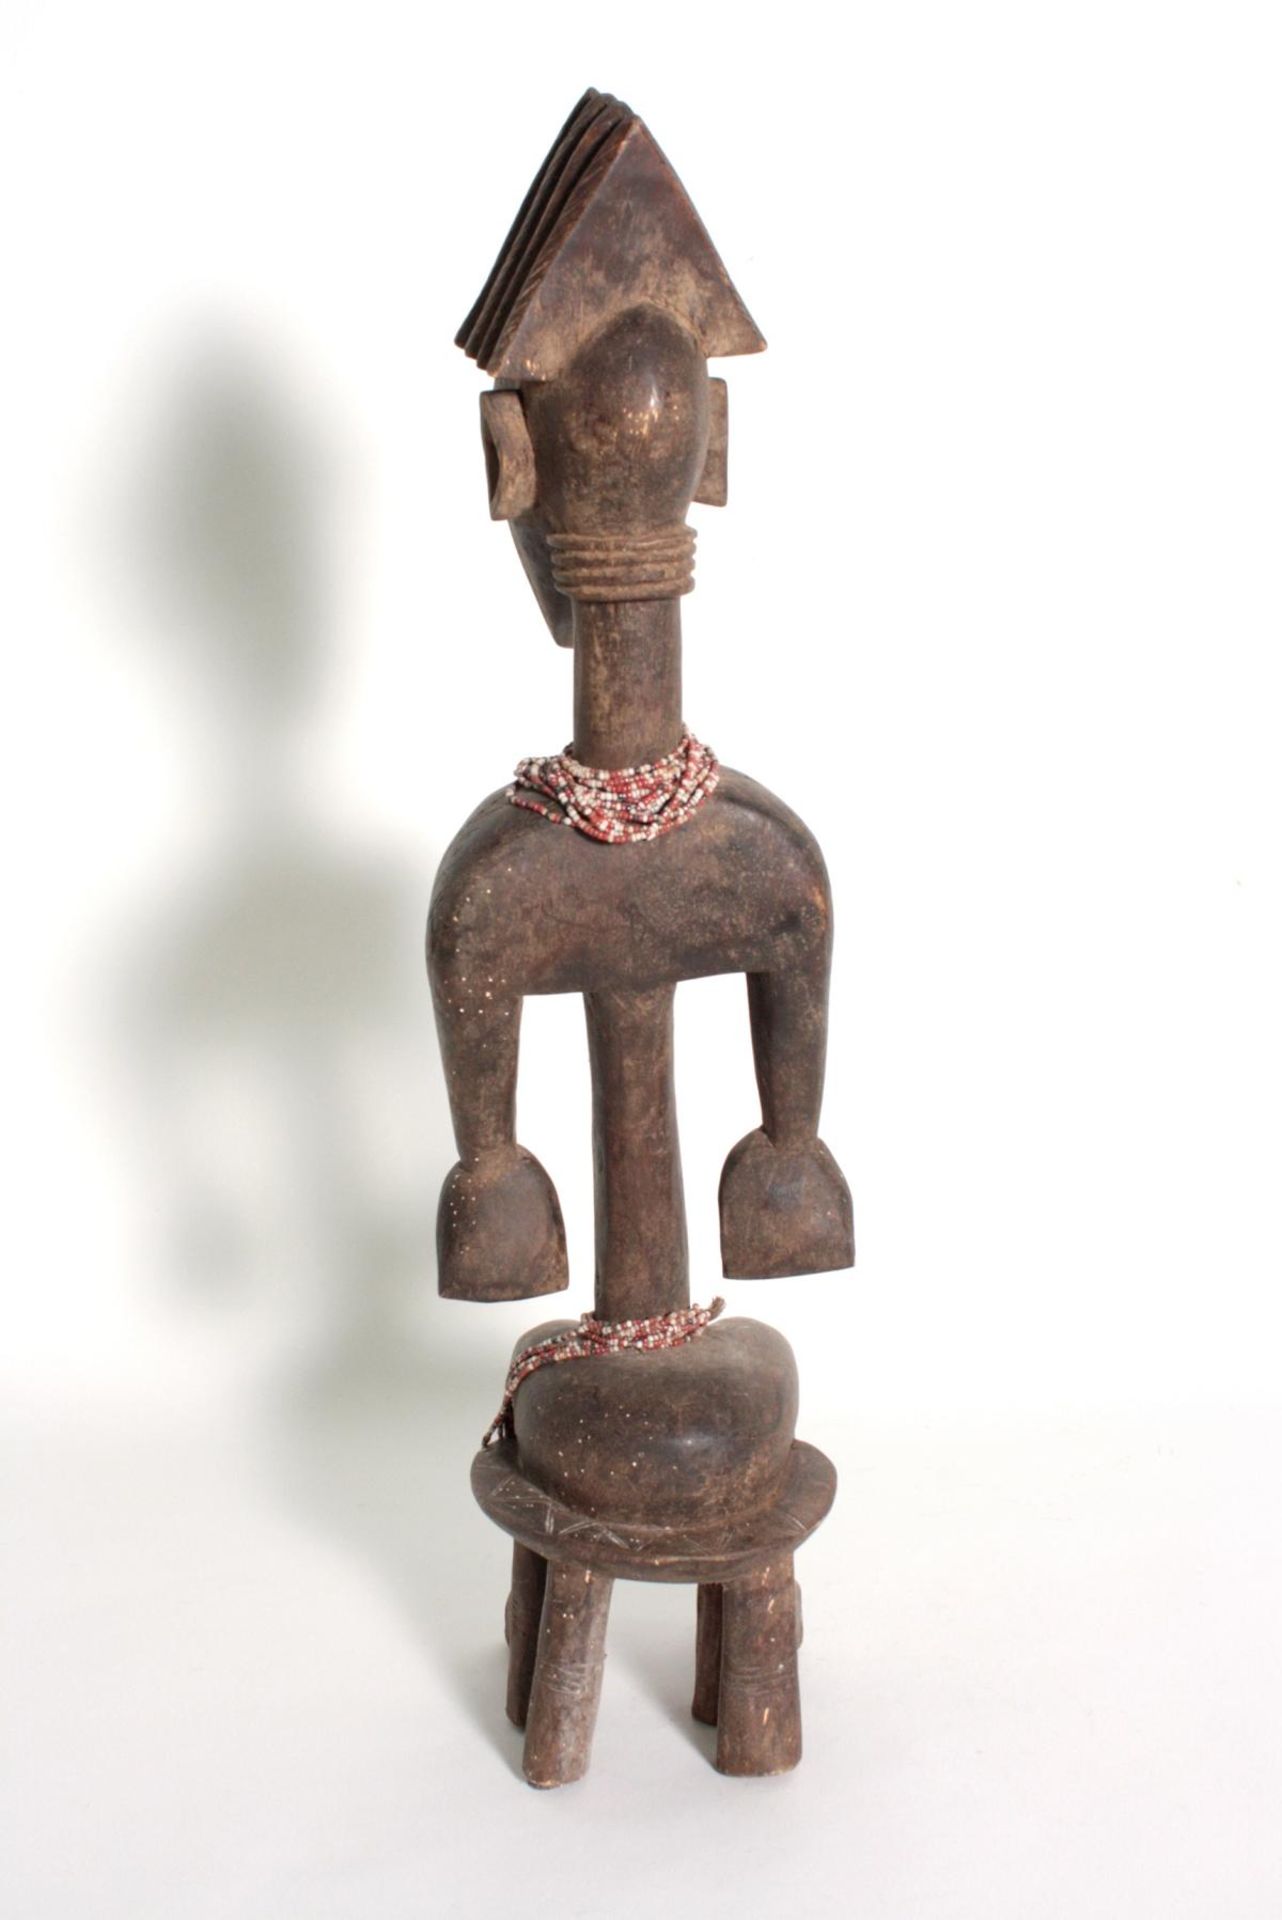 Bambara/Mali, sitzende weibliche Figur, 1. Hälfte 20. Jh.Holz, dunkelbraune Patina, sitzende Frau - Bild 4 aus 5